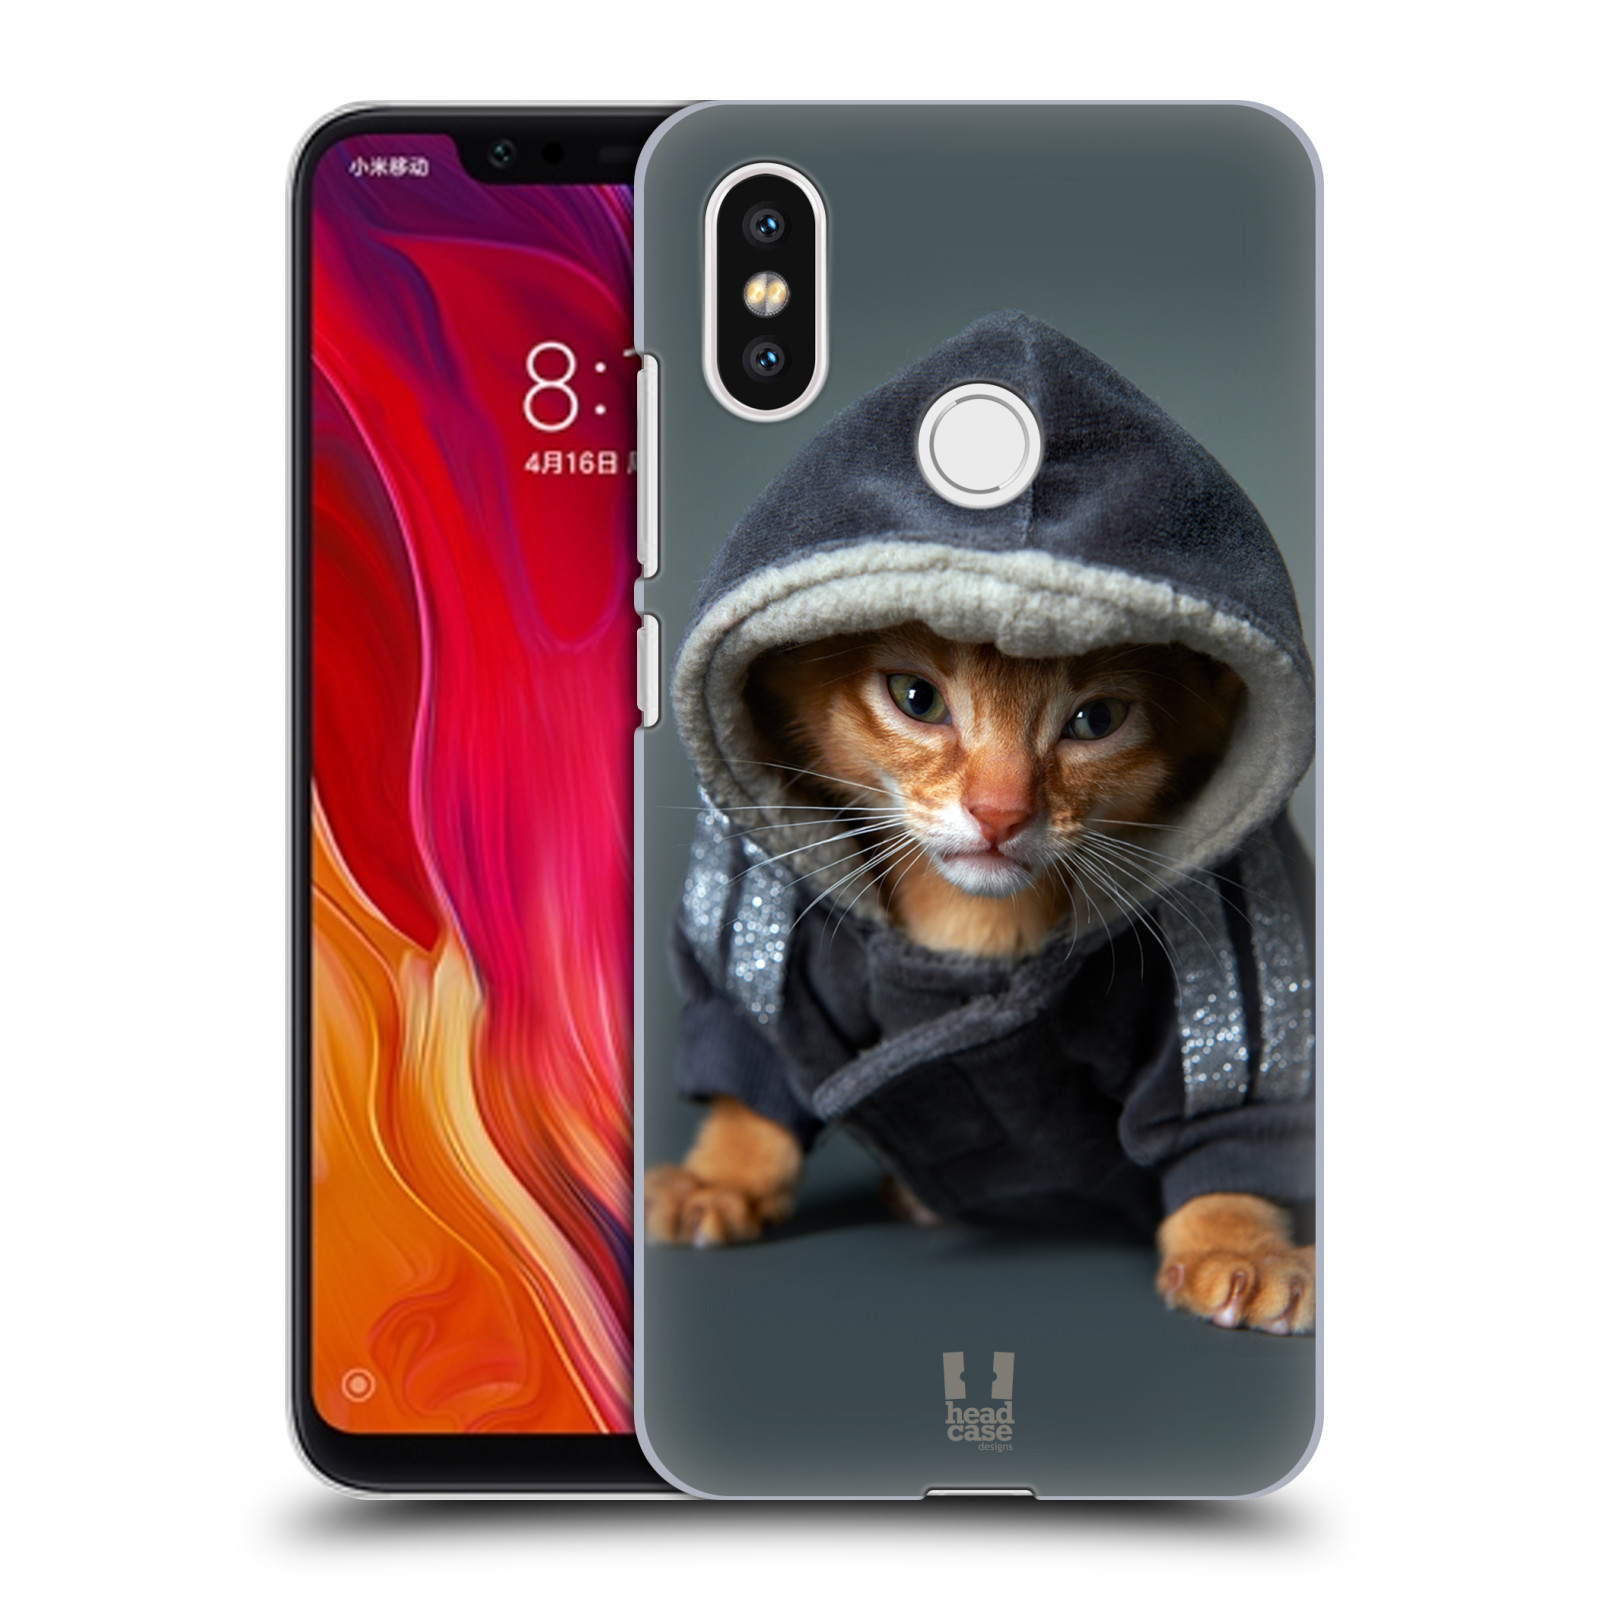 HEAD CASE plastový obal na mobil Xiaomi Mi 8 vzor Legrační zvířátka kotě/kočička s kapucí